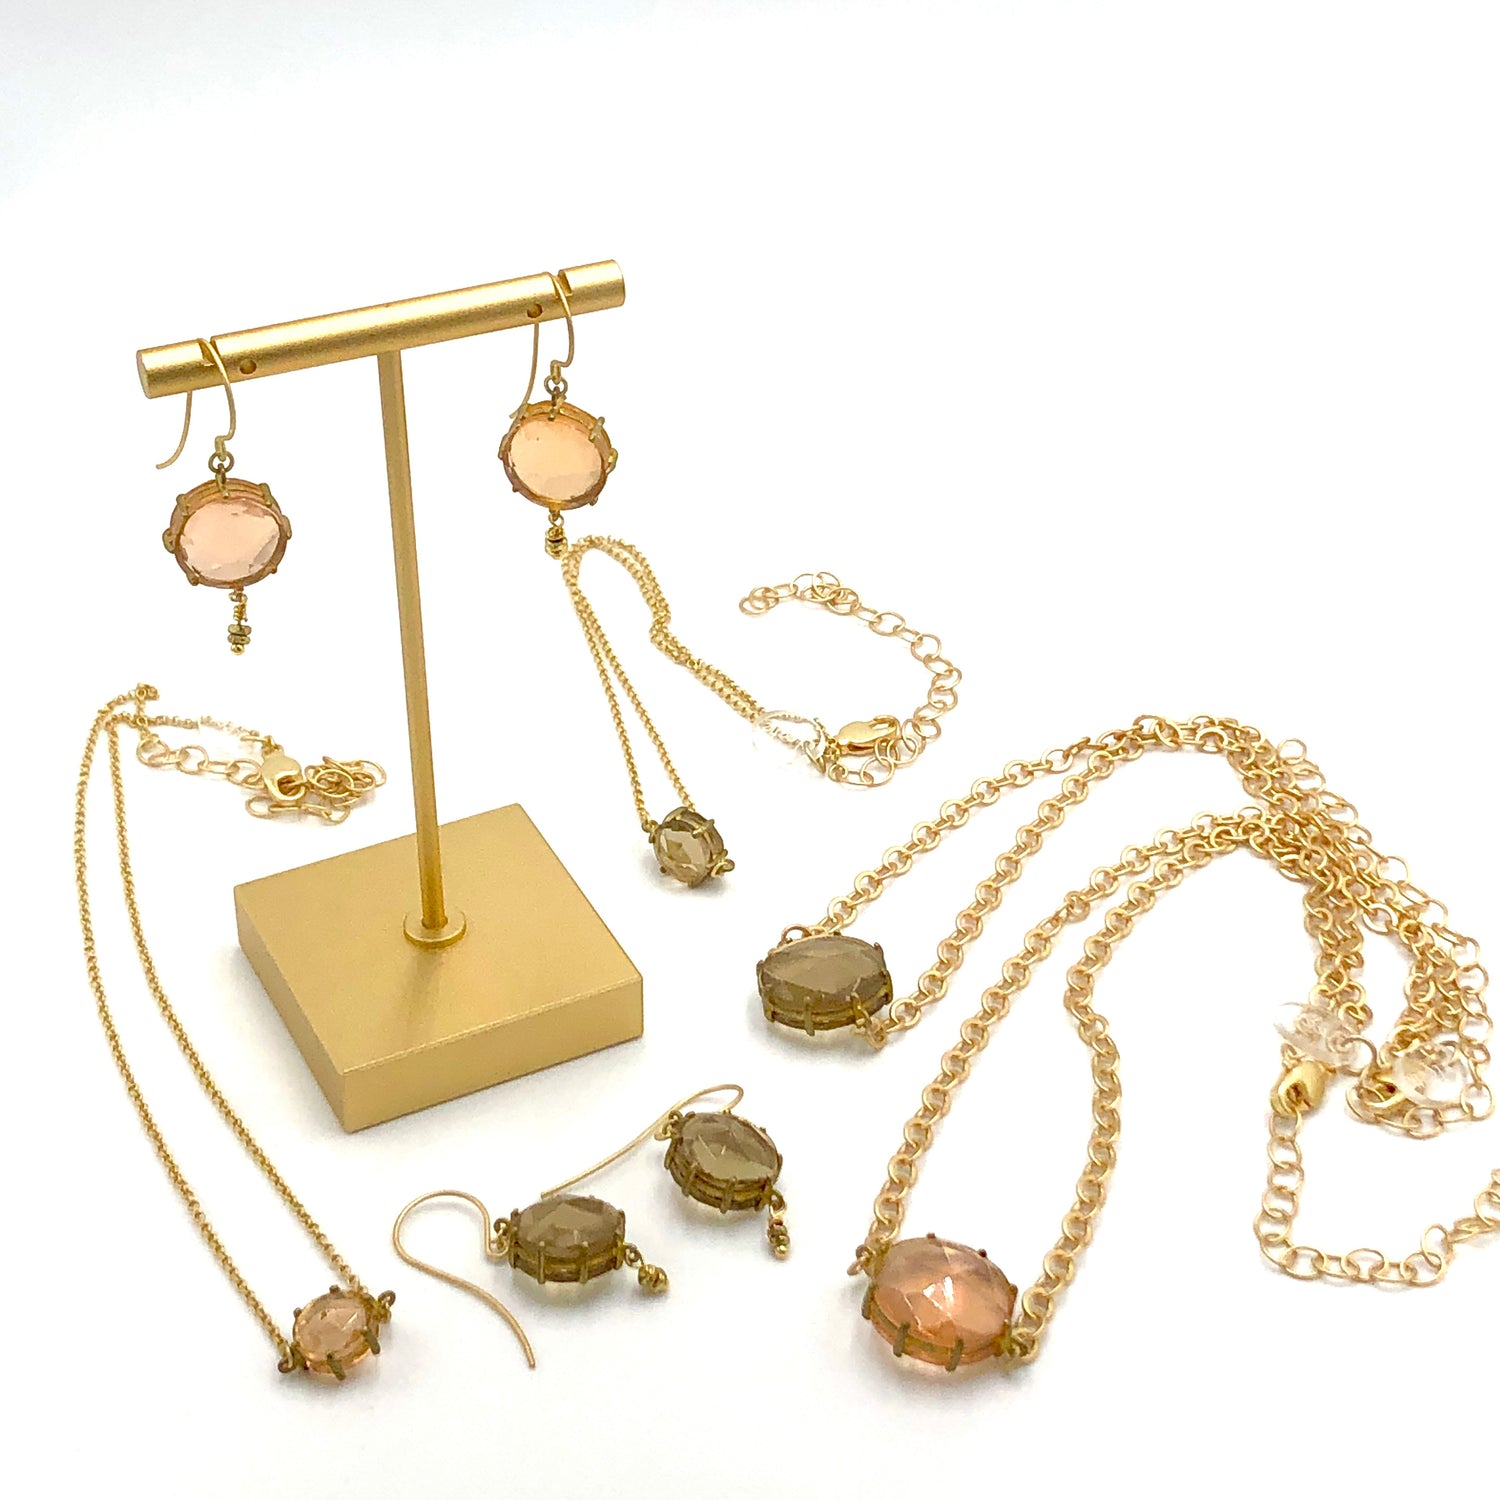 leetie heirloom jewelry collection